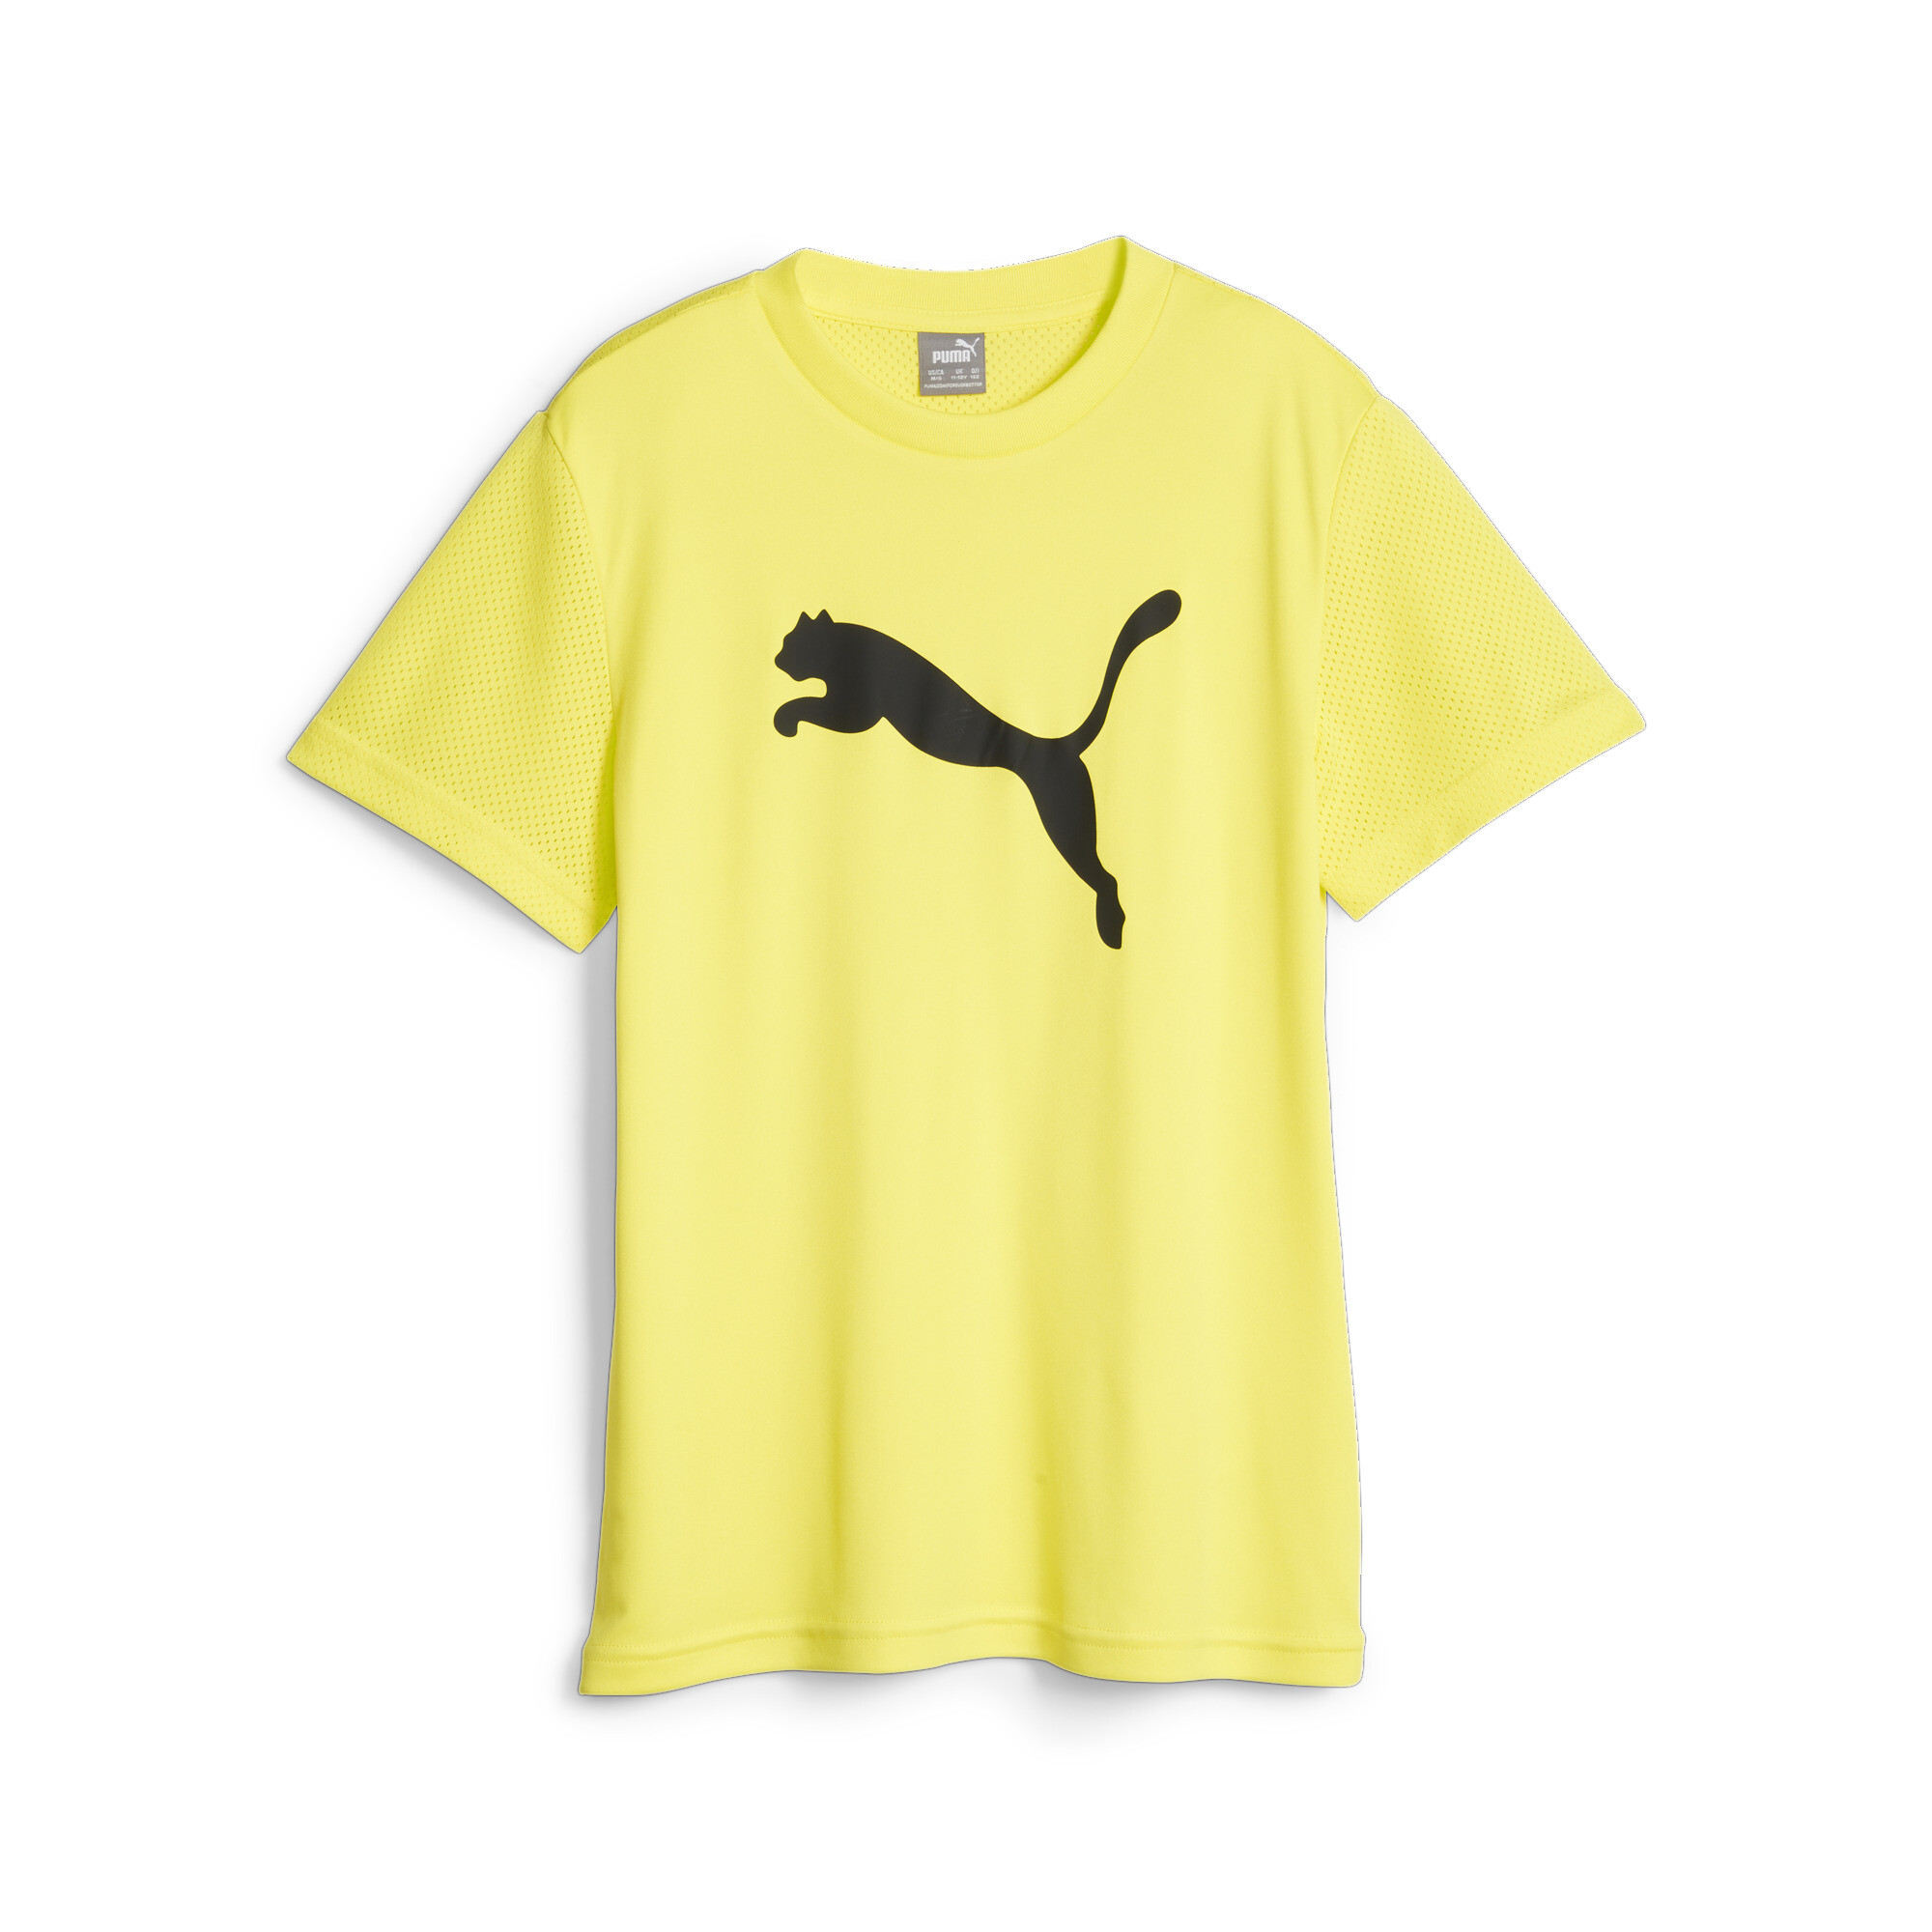 ＜プーマ公式通販＞ プーマ キッズ ボーイズ ACTIVE SPORTS ポリ キャット Tシャツ 120-160cm メンズ Fluro Yellow Pes ｜PUMA.com